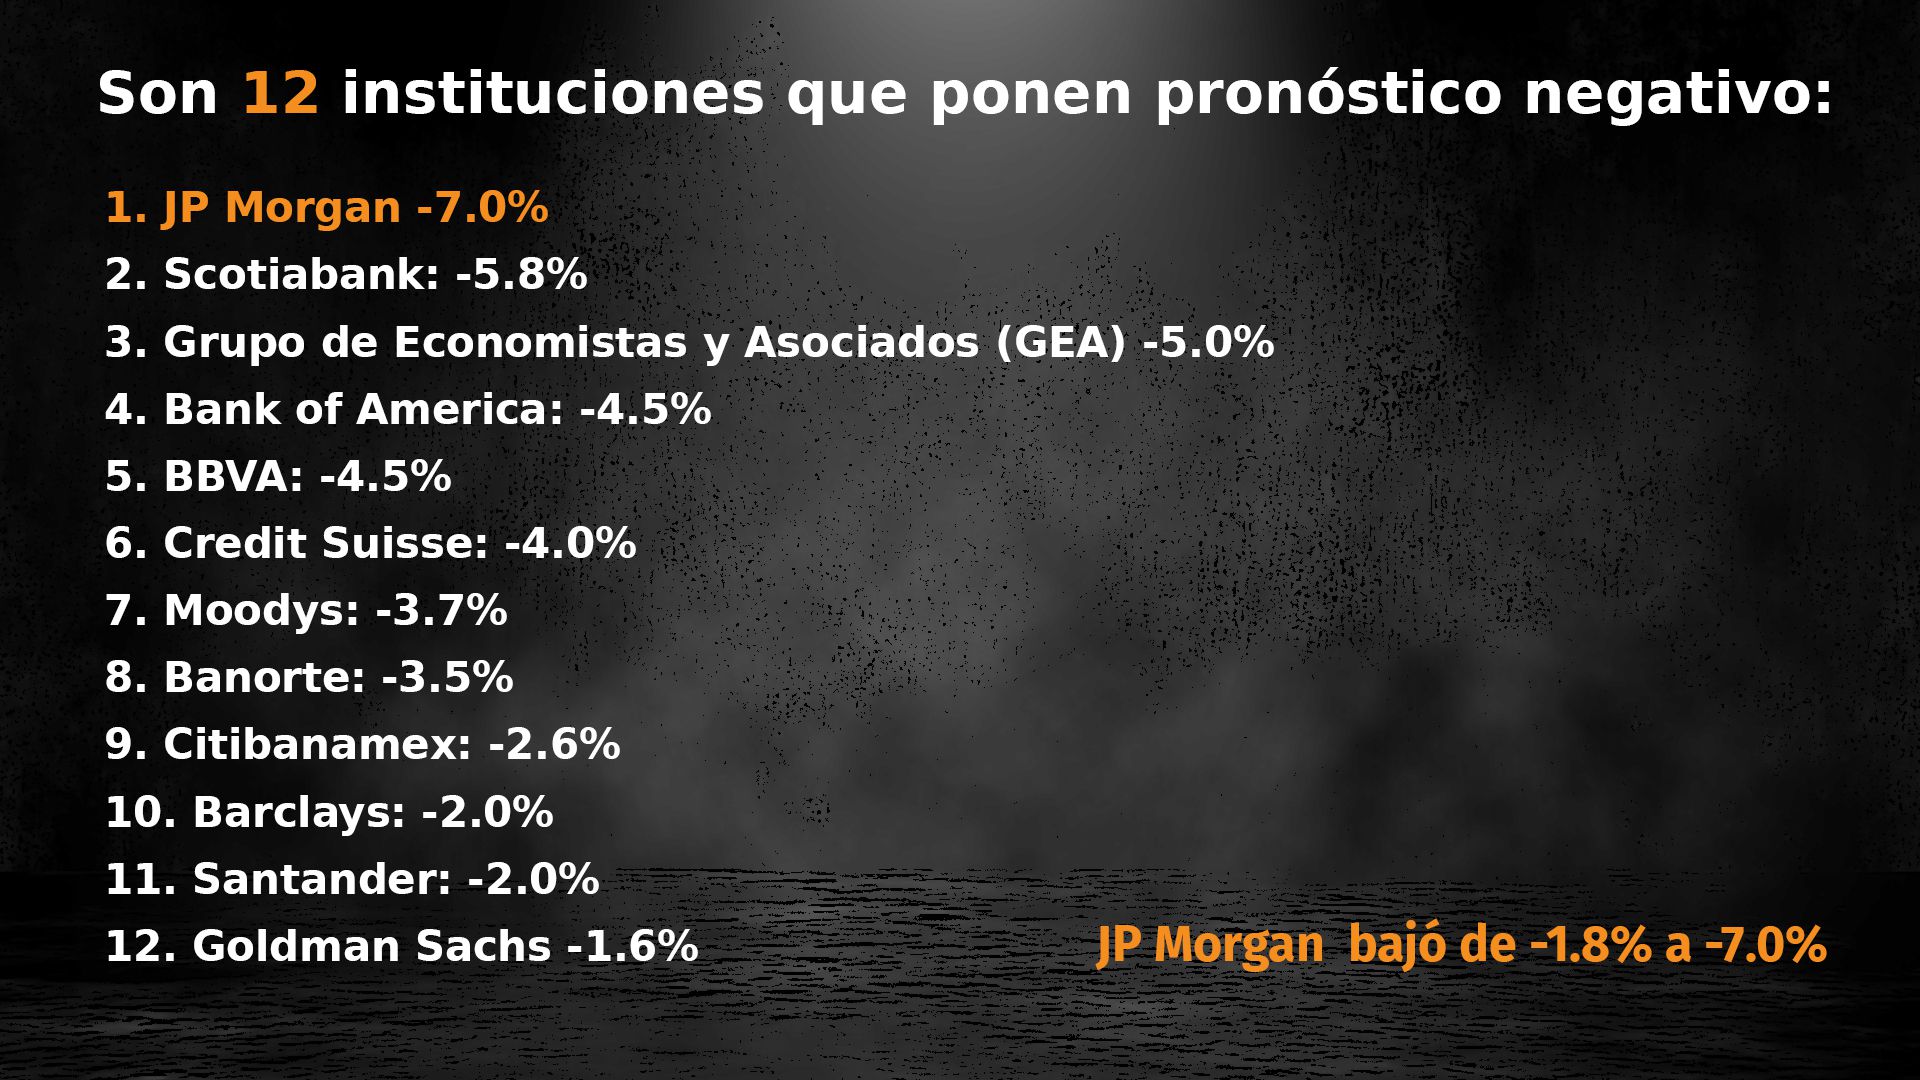 JP Morgan es la institución financiera que ha pornosticado un escenario más oscuros para las finanzas mexicanas al bajar de 1.8 a 7 por ciento el pronóstico de crecimiento este año (Foto: Infobae)